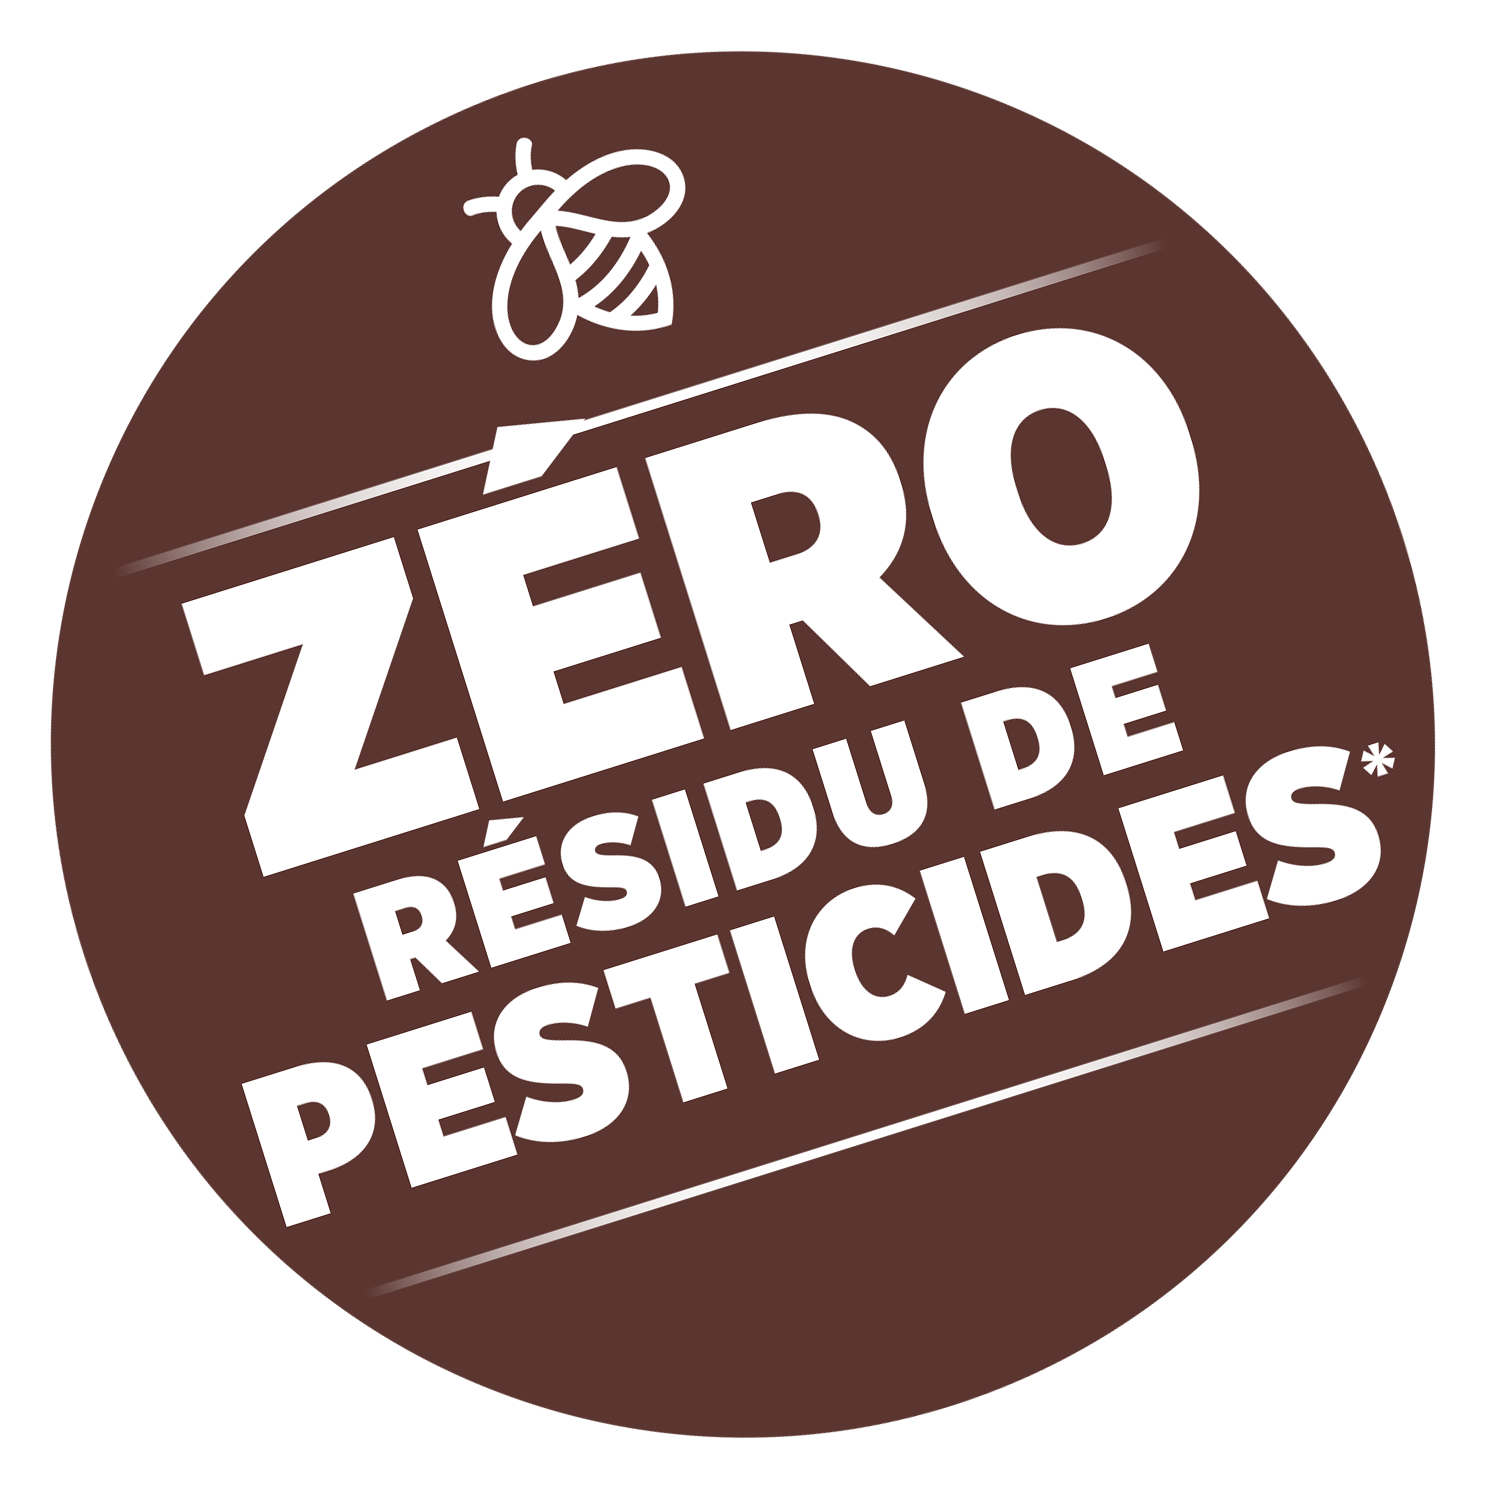 Verpflichtung zu null Pestizidrückständen